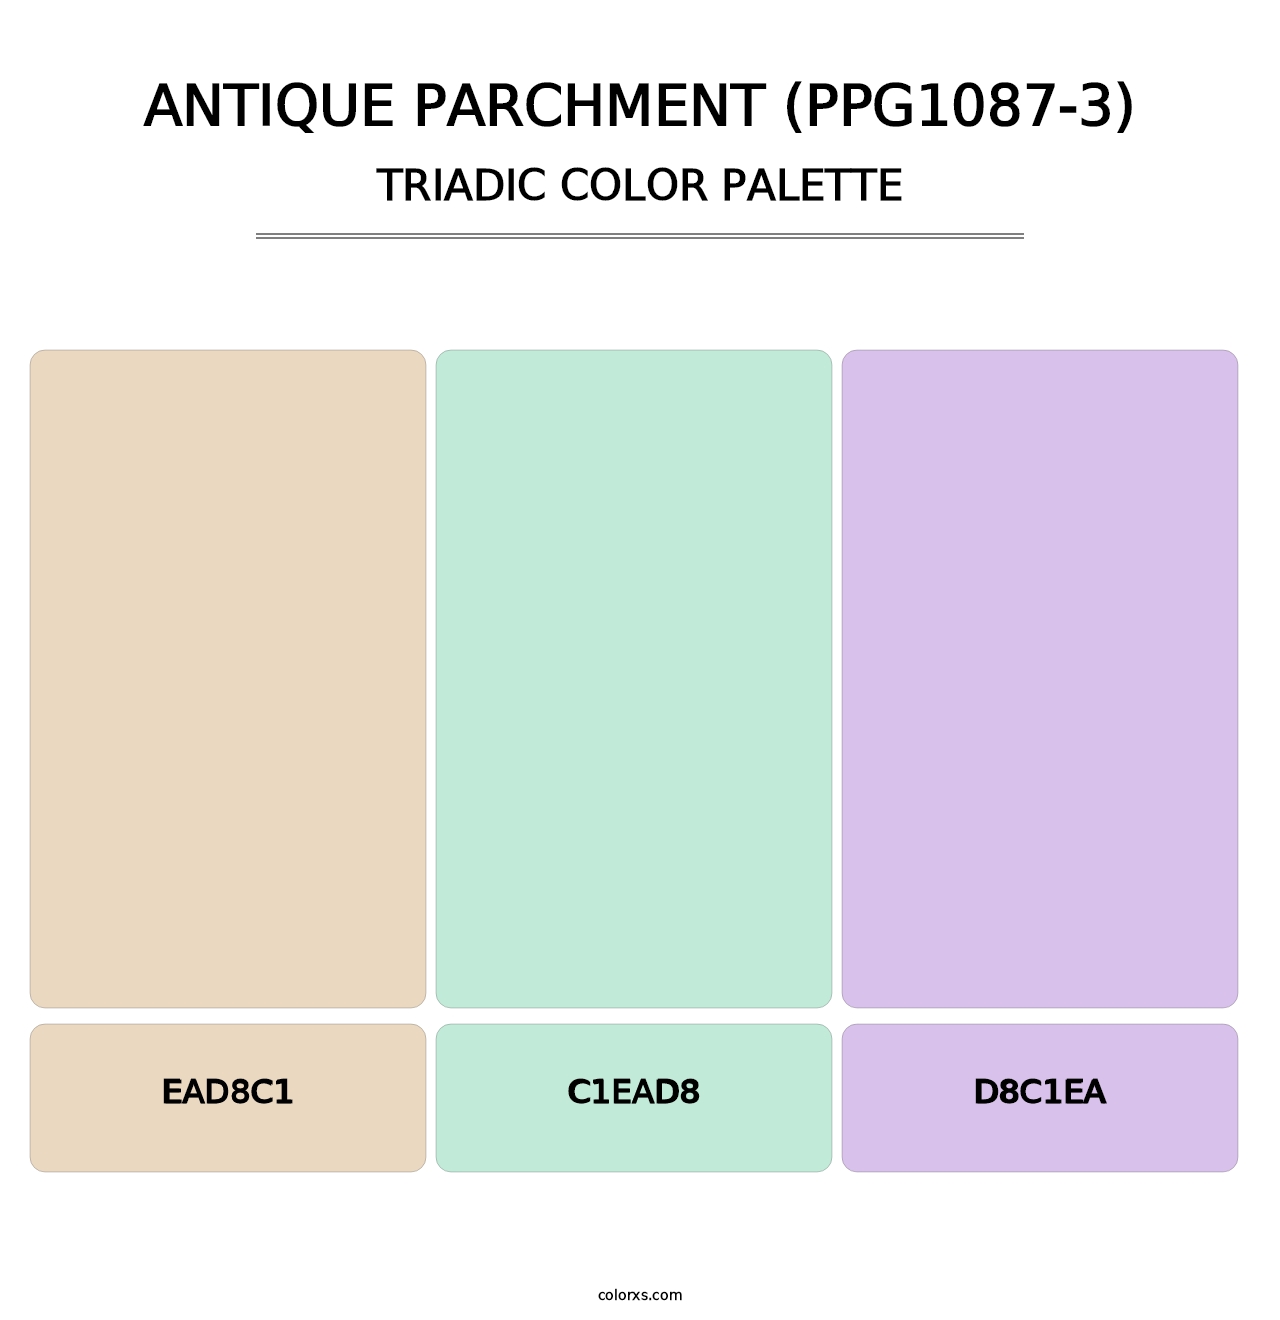 Antique Parchment (PPG1087-3) - Triadic Color Palette